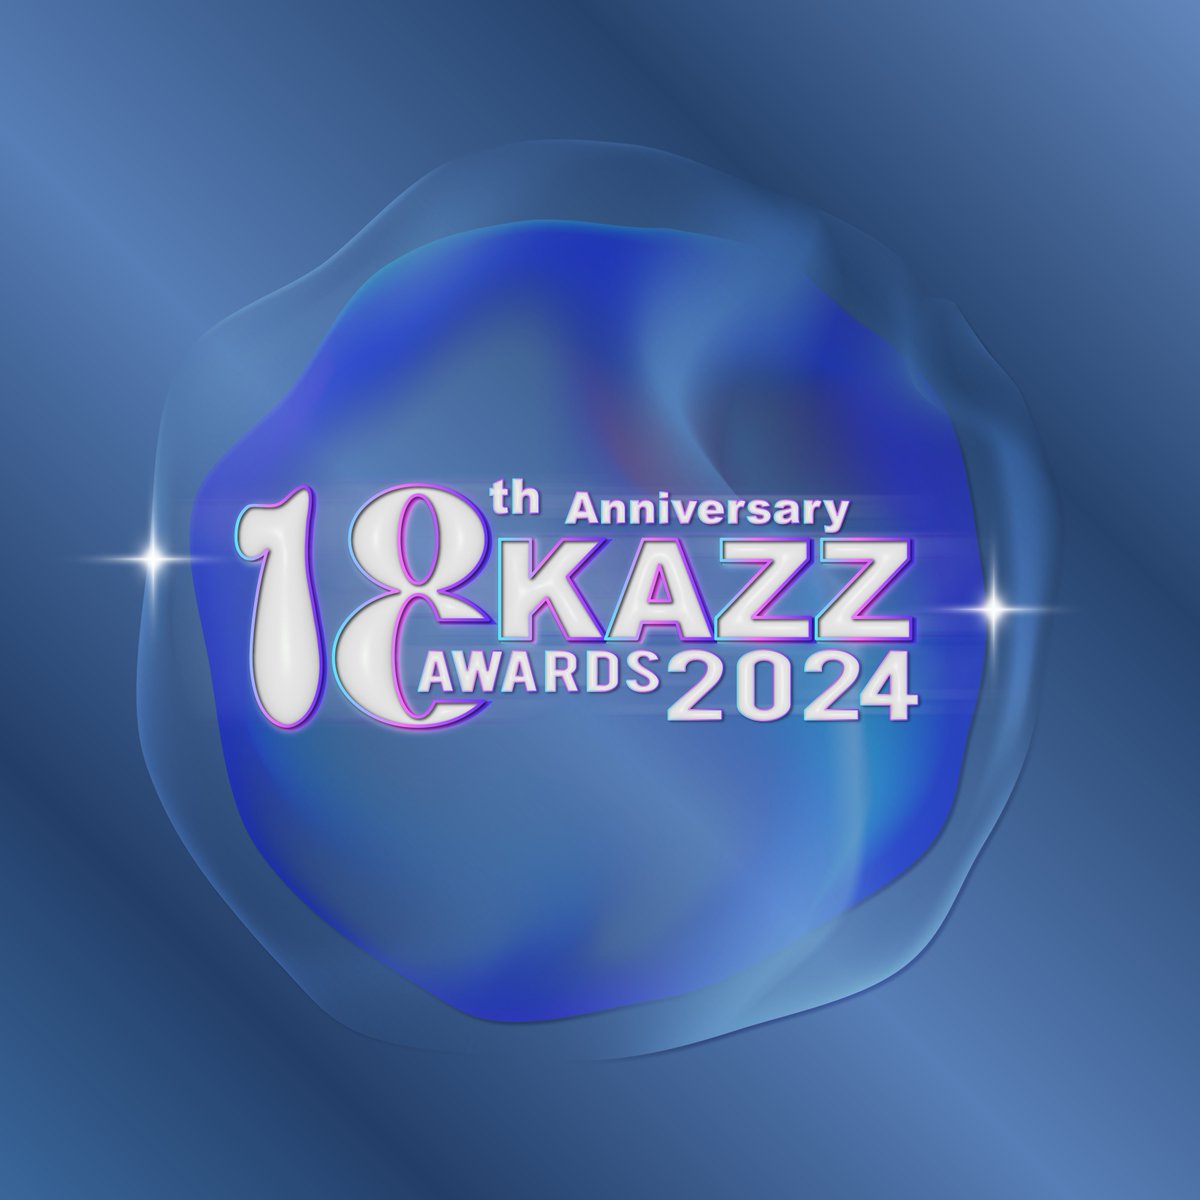 จัดเต็ม!! บรรยากาศฉลองครบรอบ 18 ปี ‘KAZZ MAGAZINE’ ดารา ศิลปินขวัญใจวัยรุ่น หลากหลายค่าย ตบเท้าเข้าร่วมแสดงความยินดี และรับรางวัลในงาน “KAZZ Awards 2024” อ่านต่อ : allareaentertainment.com/archives/110411 #KAZZAWARDS2024 #KAZZMAGAZINE